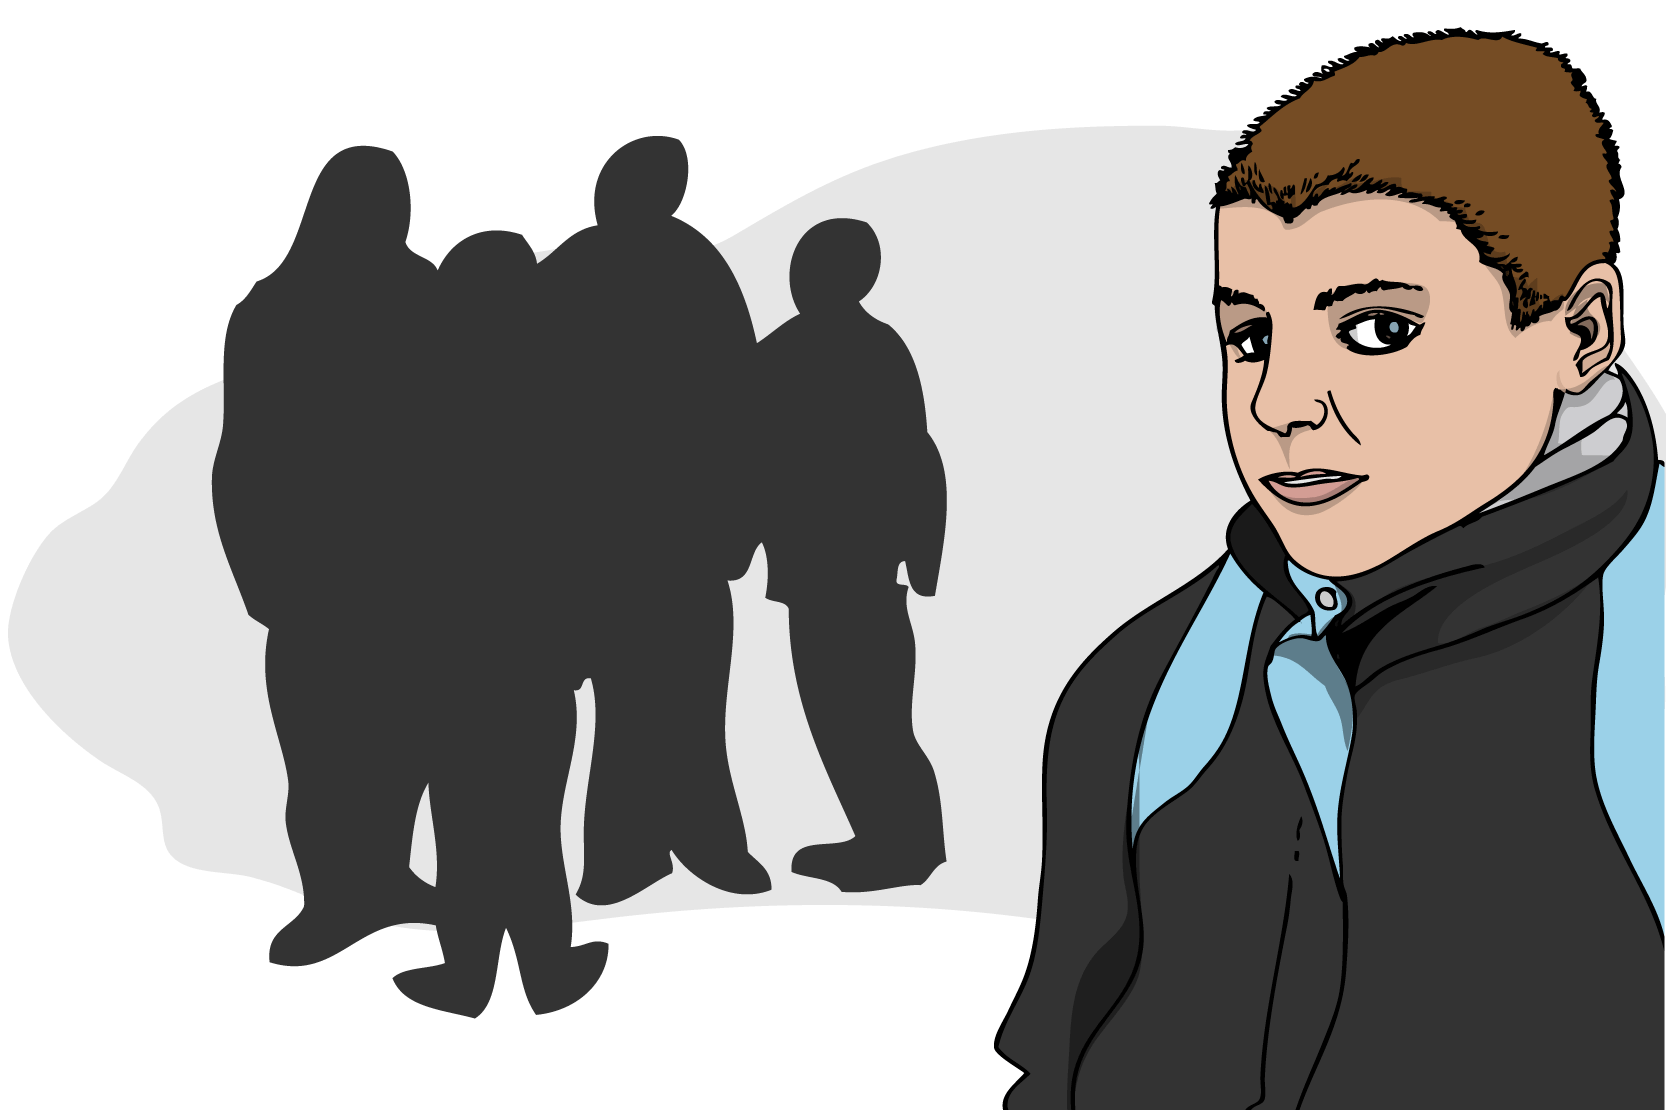 En ung kille står en bit ifrån en grupp människor som syns som skuggor. Illustration.